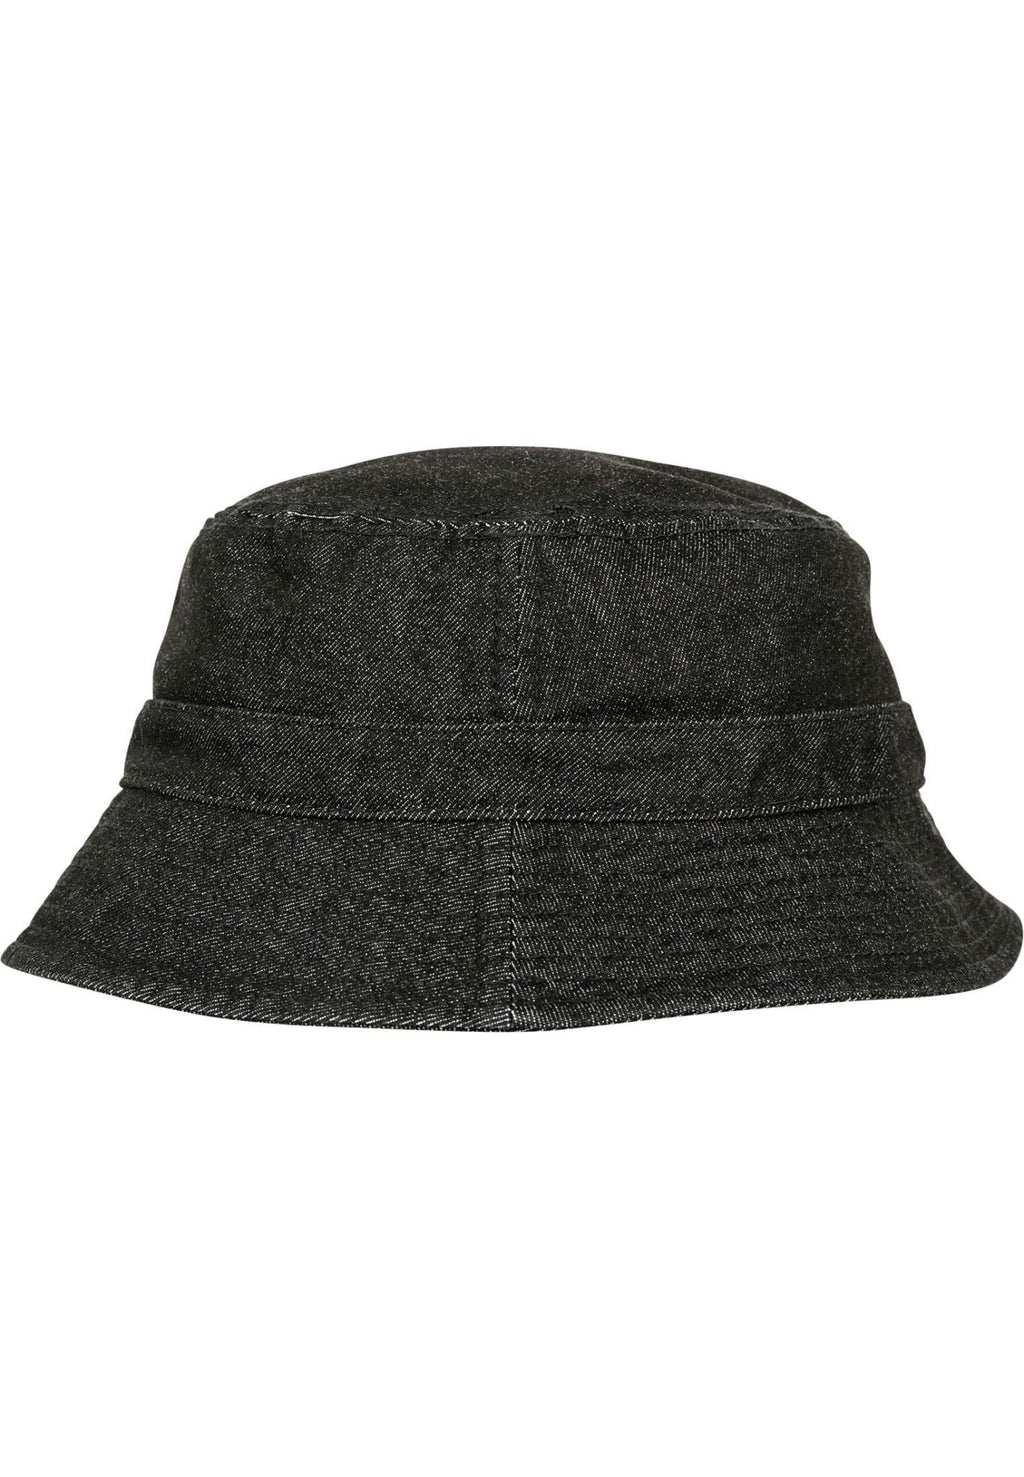 水桶帽牛仔布 - 黑色